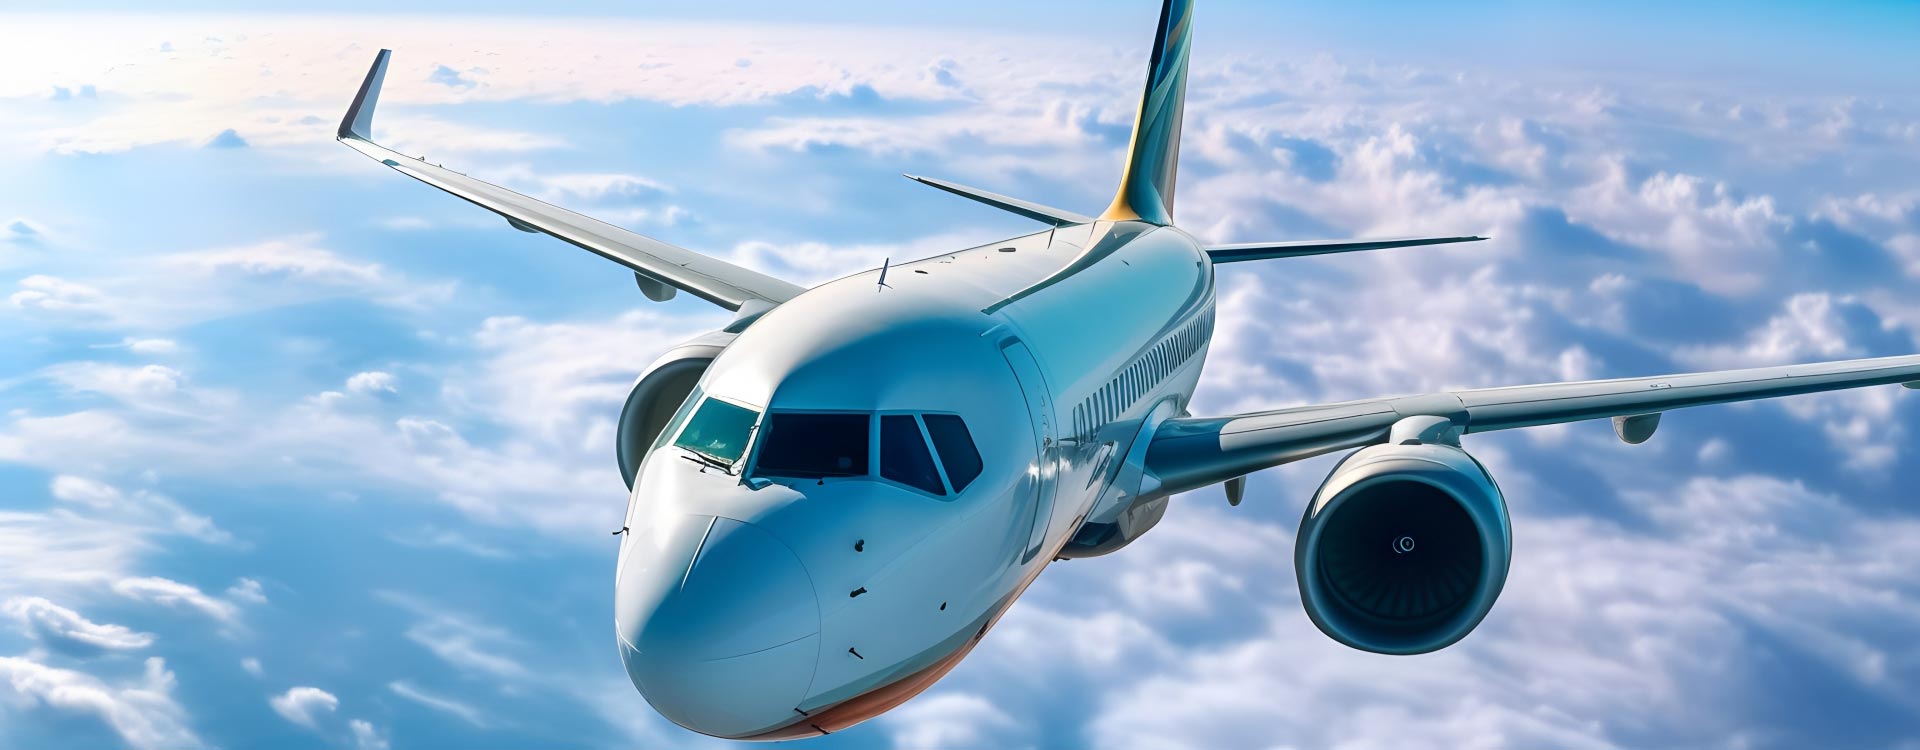 航空機メーカーが承認する
最高級金属加工油